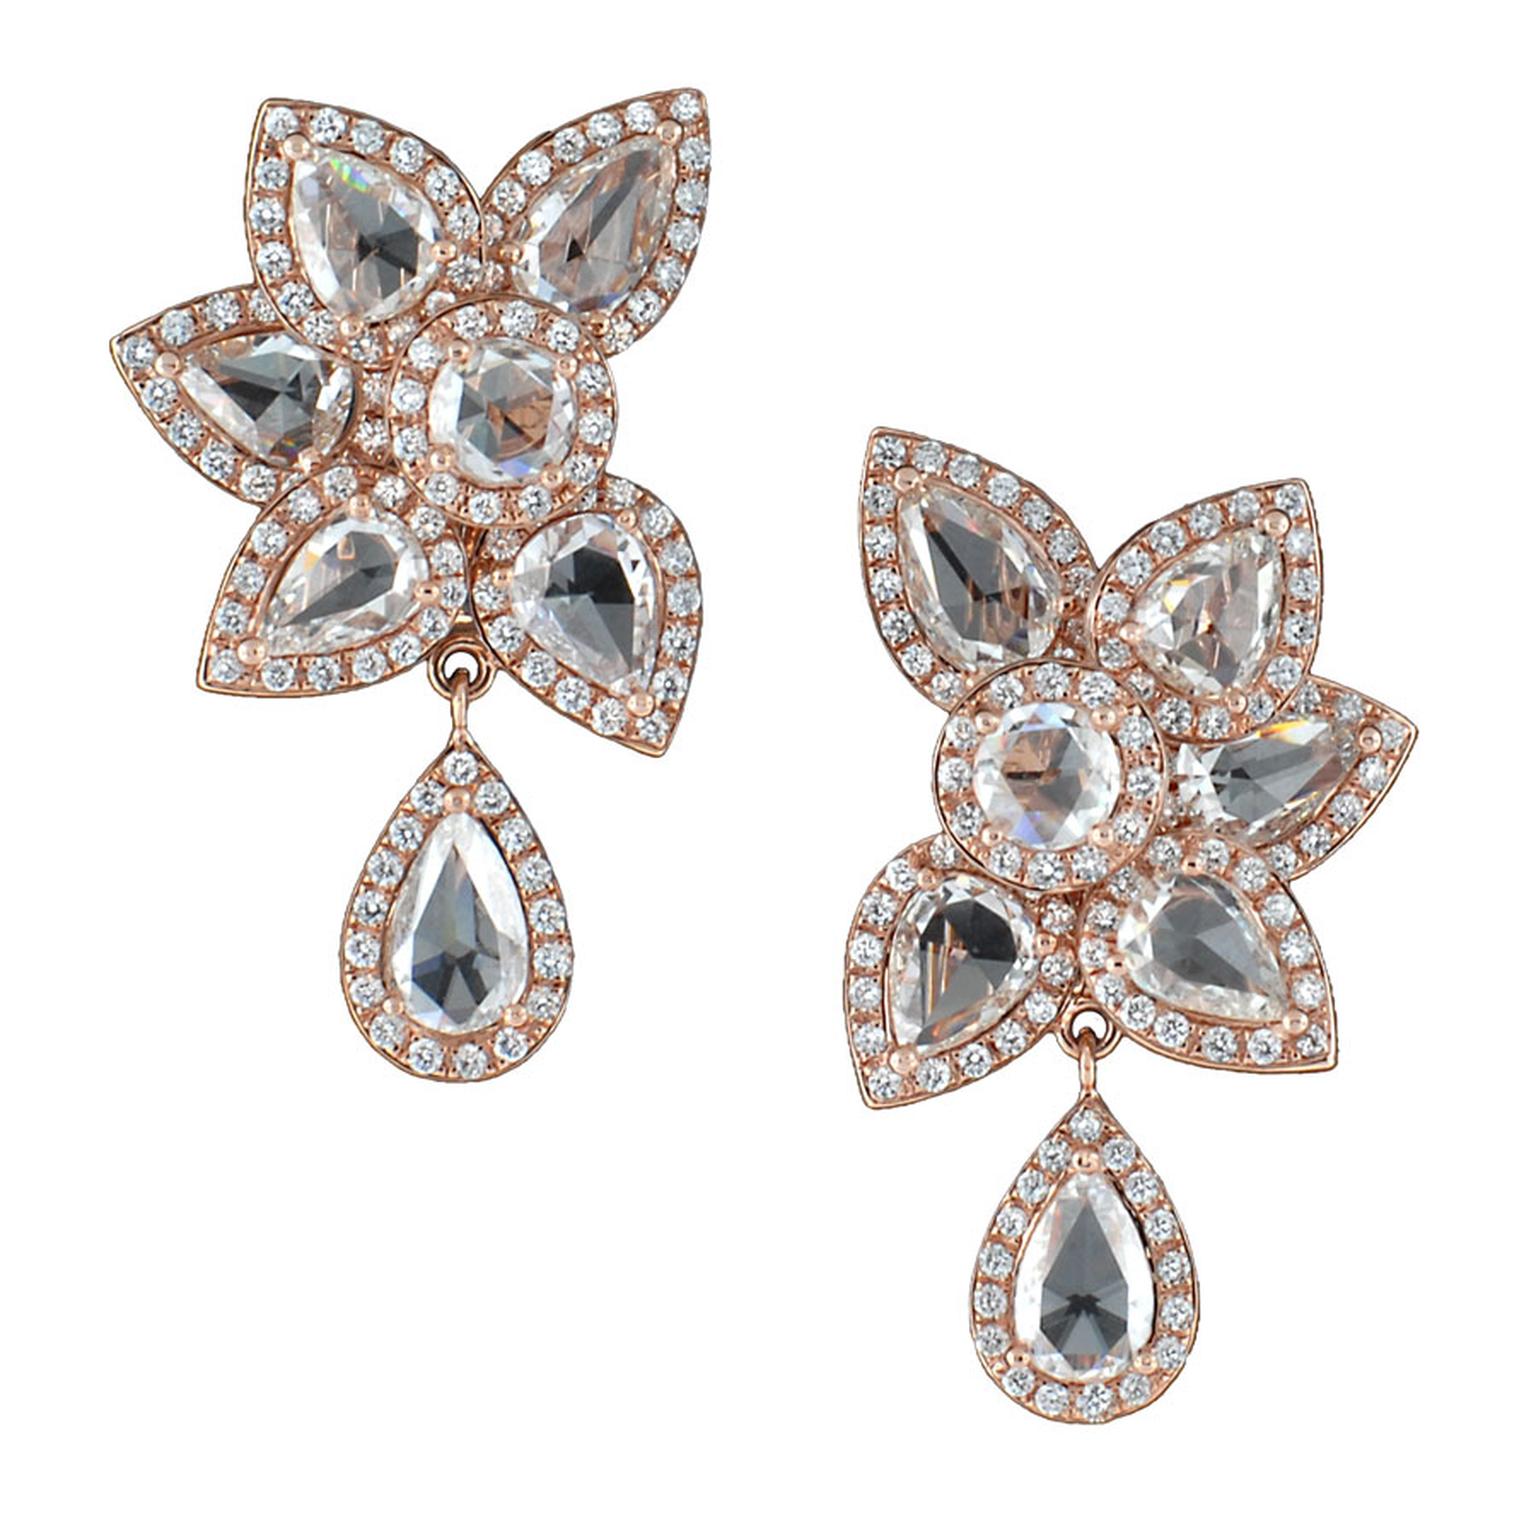 Avakian-Haute-Joaillerie-Flower-earrings.jpg